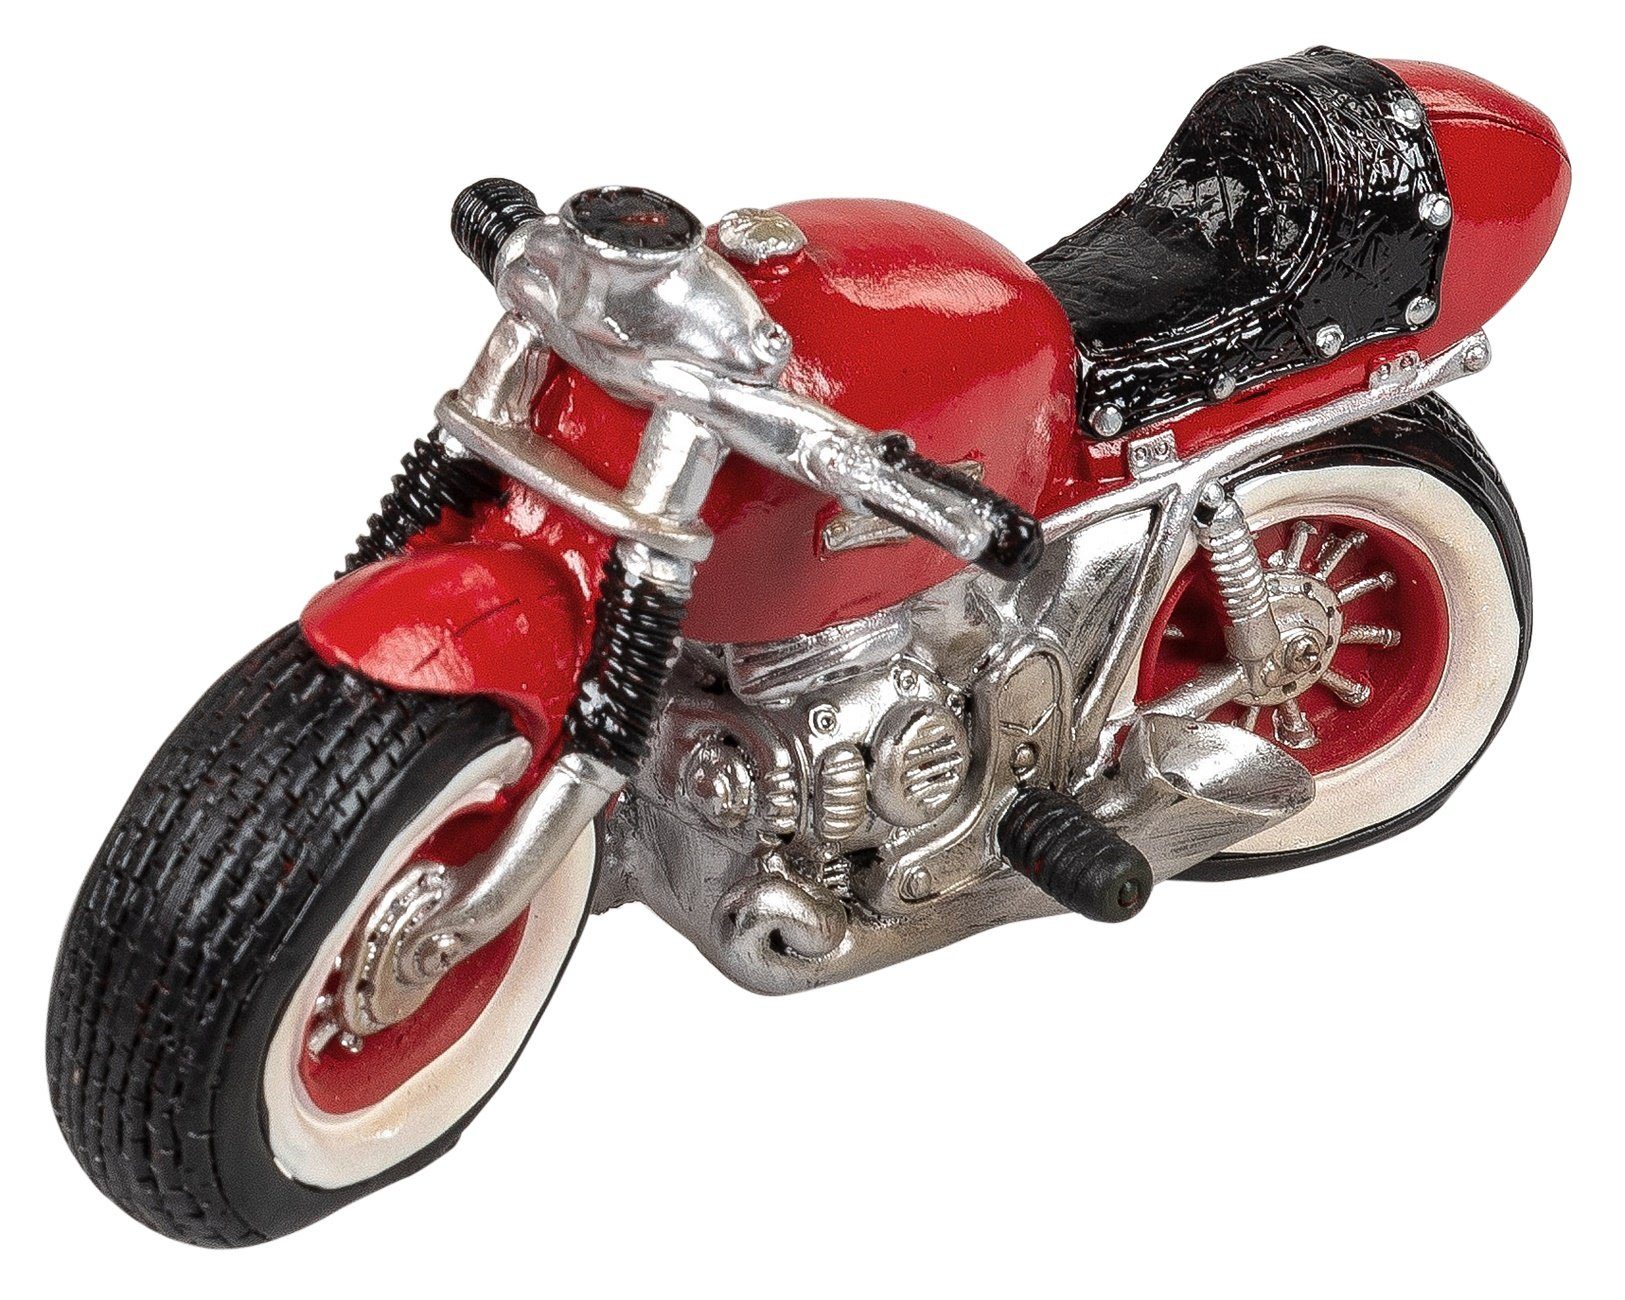 dekojohnson Dekofigur Rocker-Deko Biker-Deko Chopper Motorrad 20x11cm